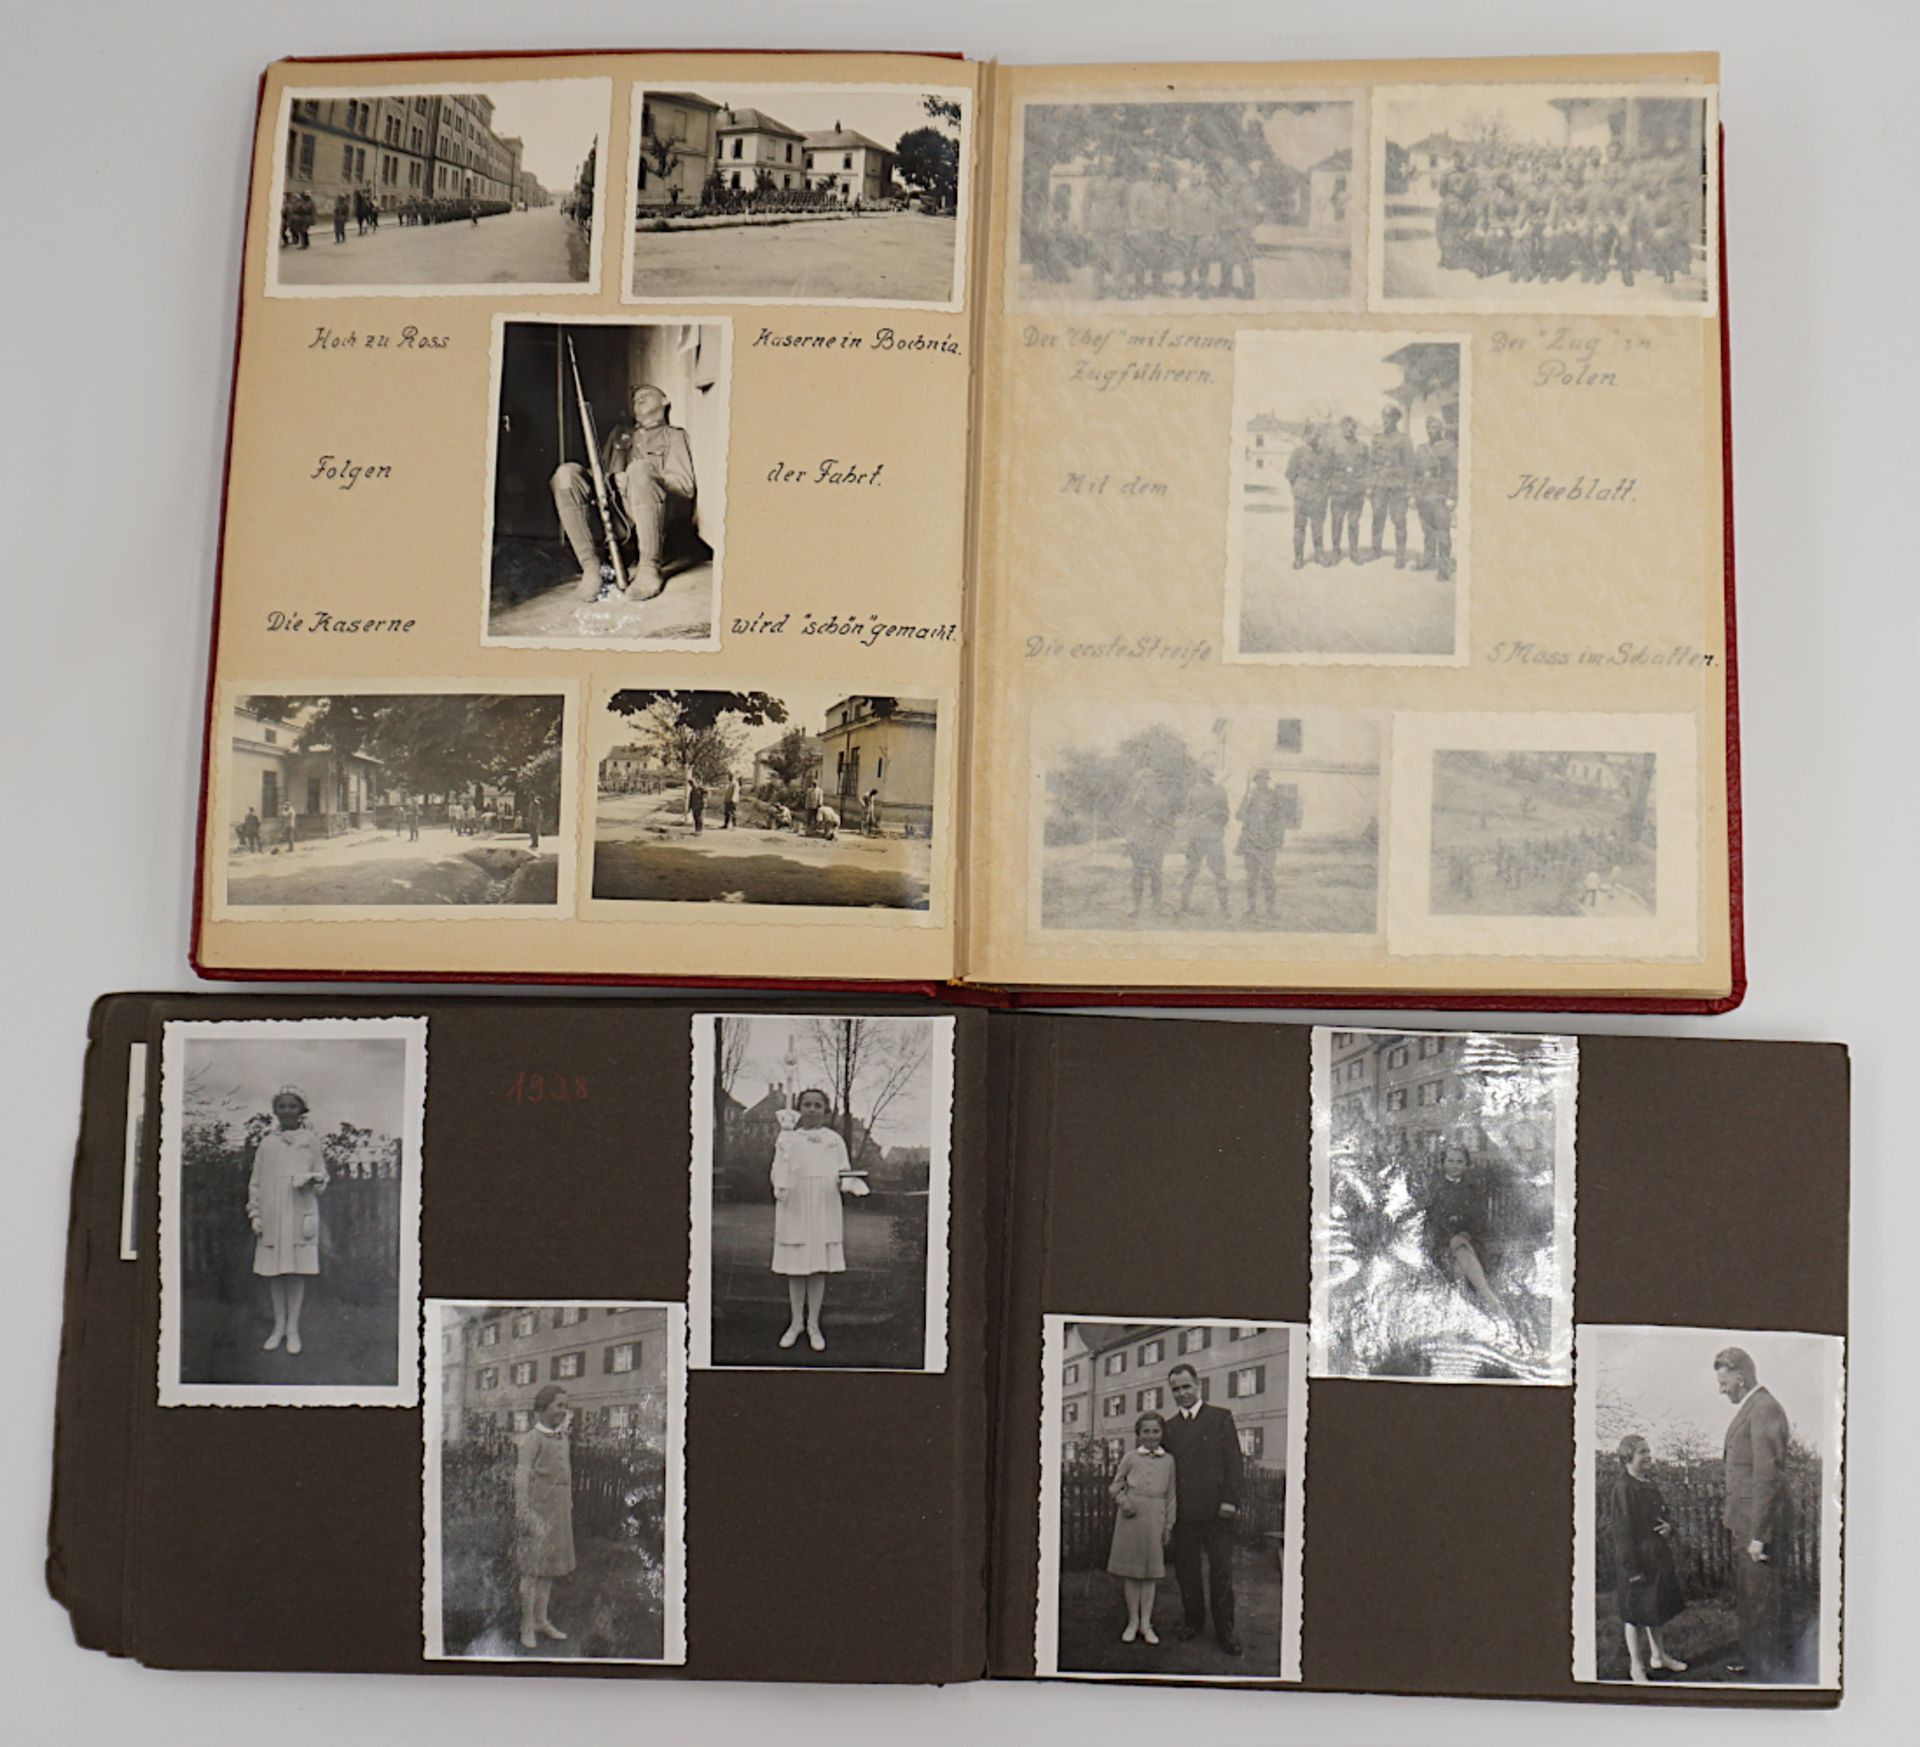 1 Album mit Fotografien 1939/1940er Jahre, u.a. "Ausbildung", "Polen", "Dünkirchen", "Lille", "Paris - Image 2 of 2